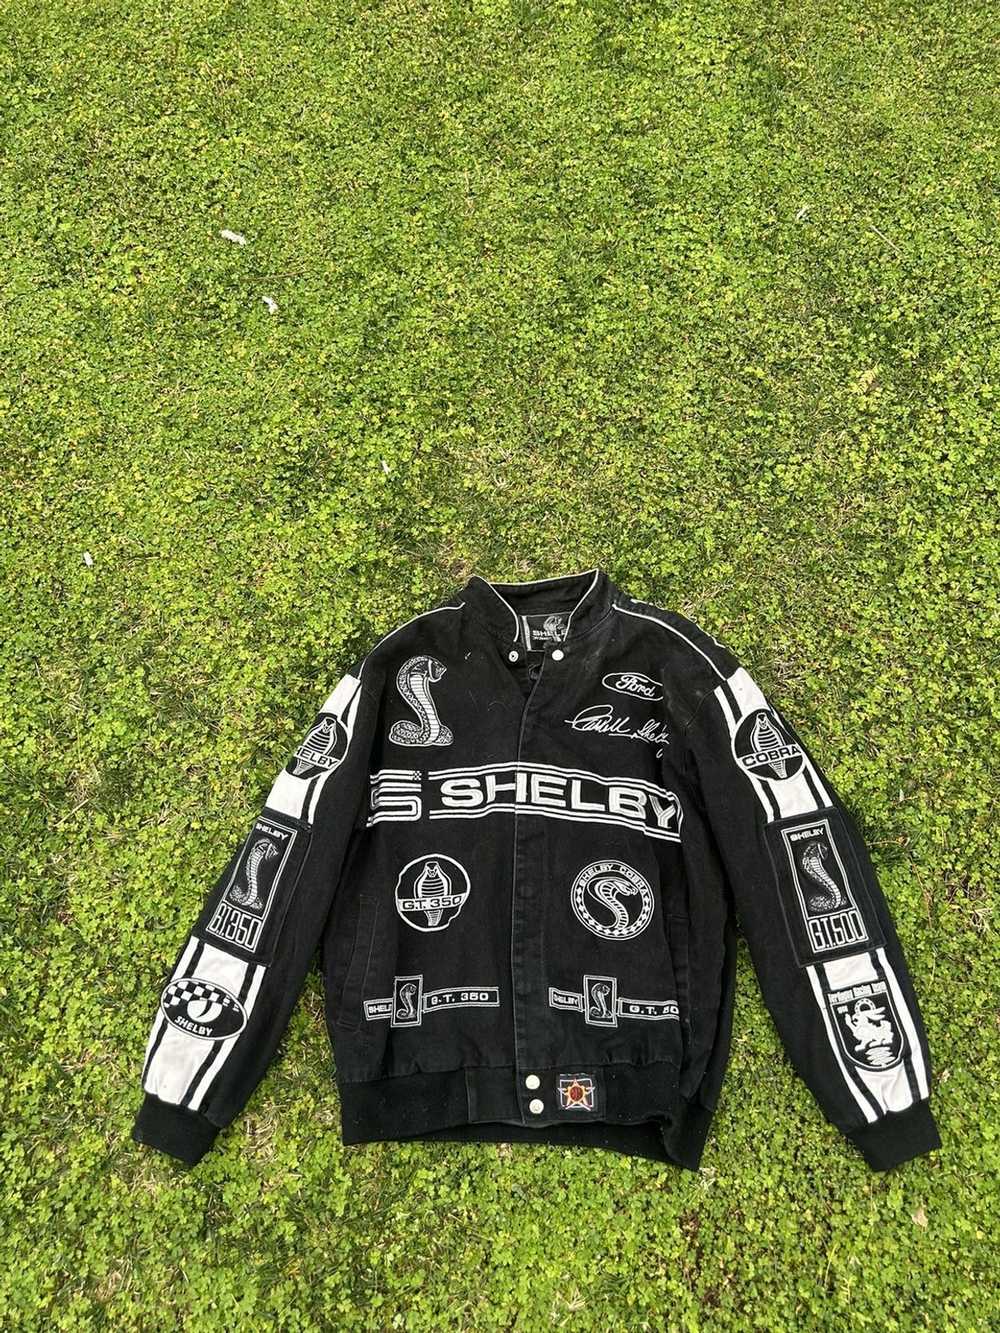 Racing × Streetwear × Vintage Shelby racing jacket - image 2